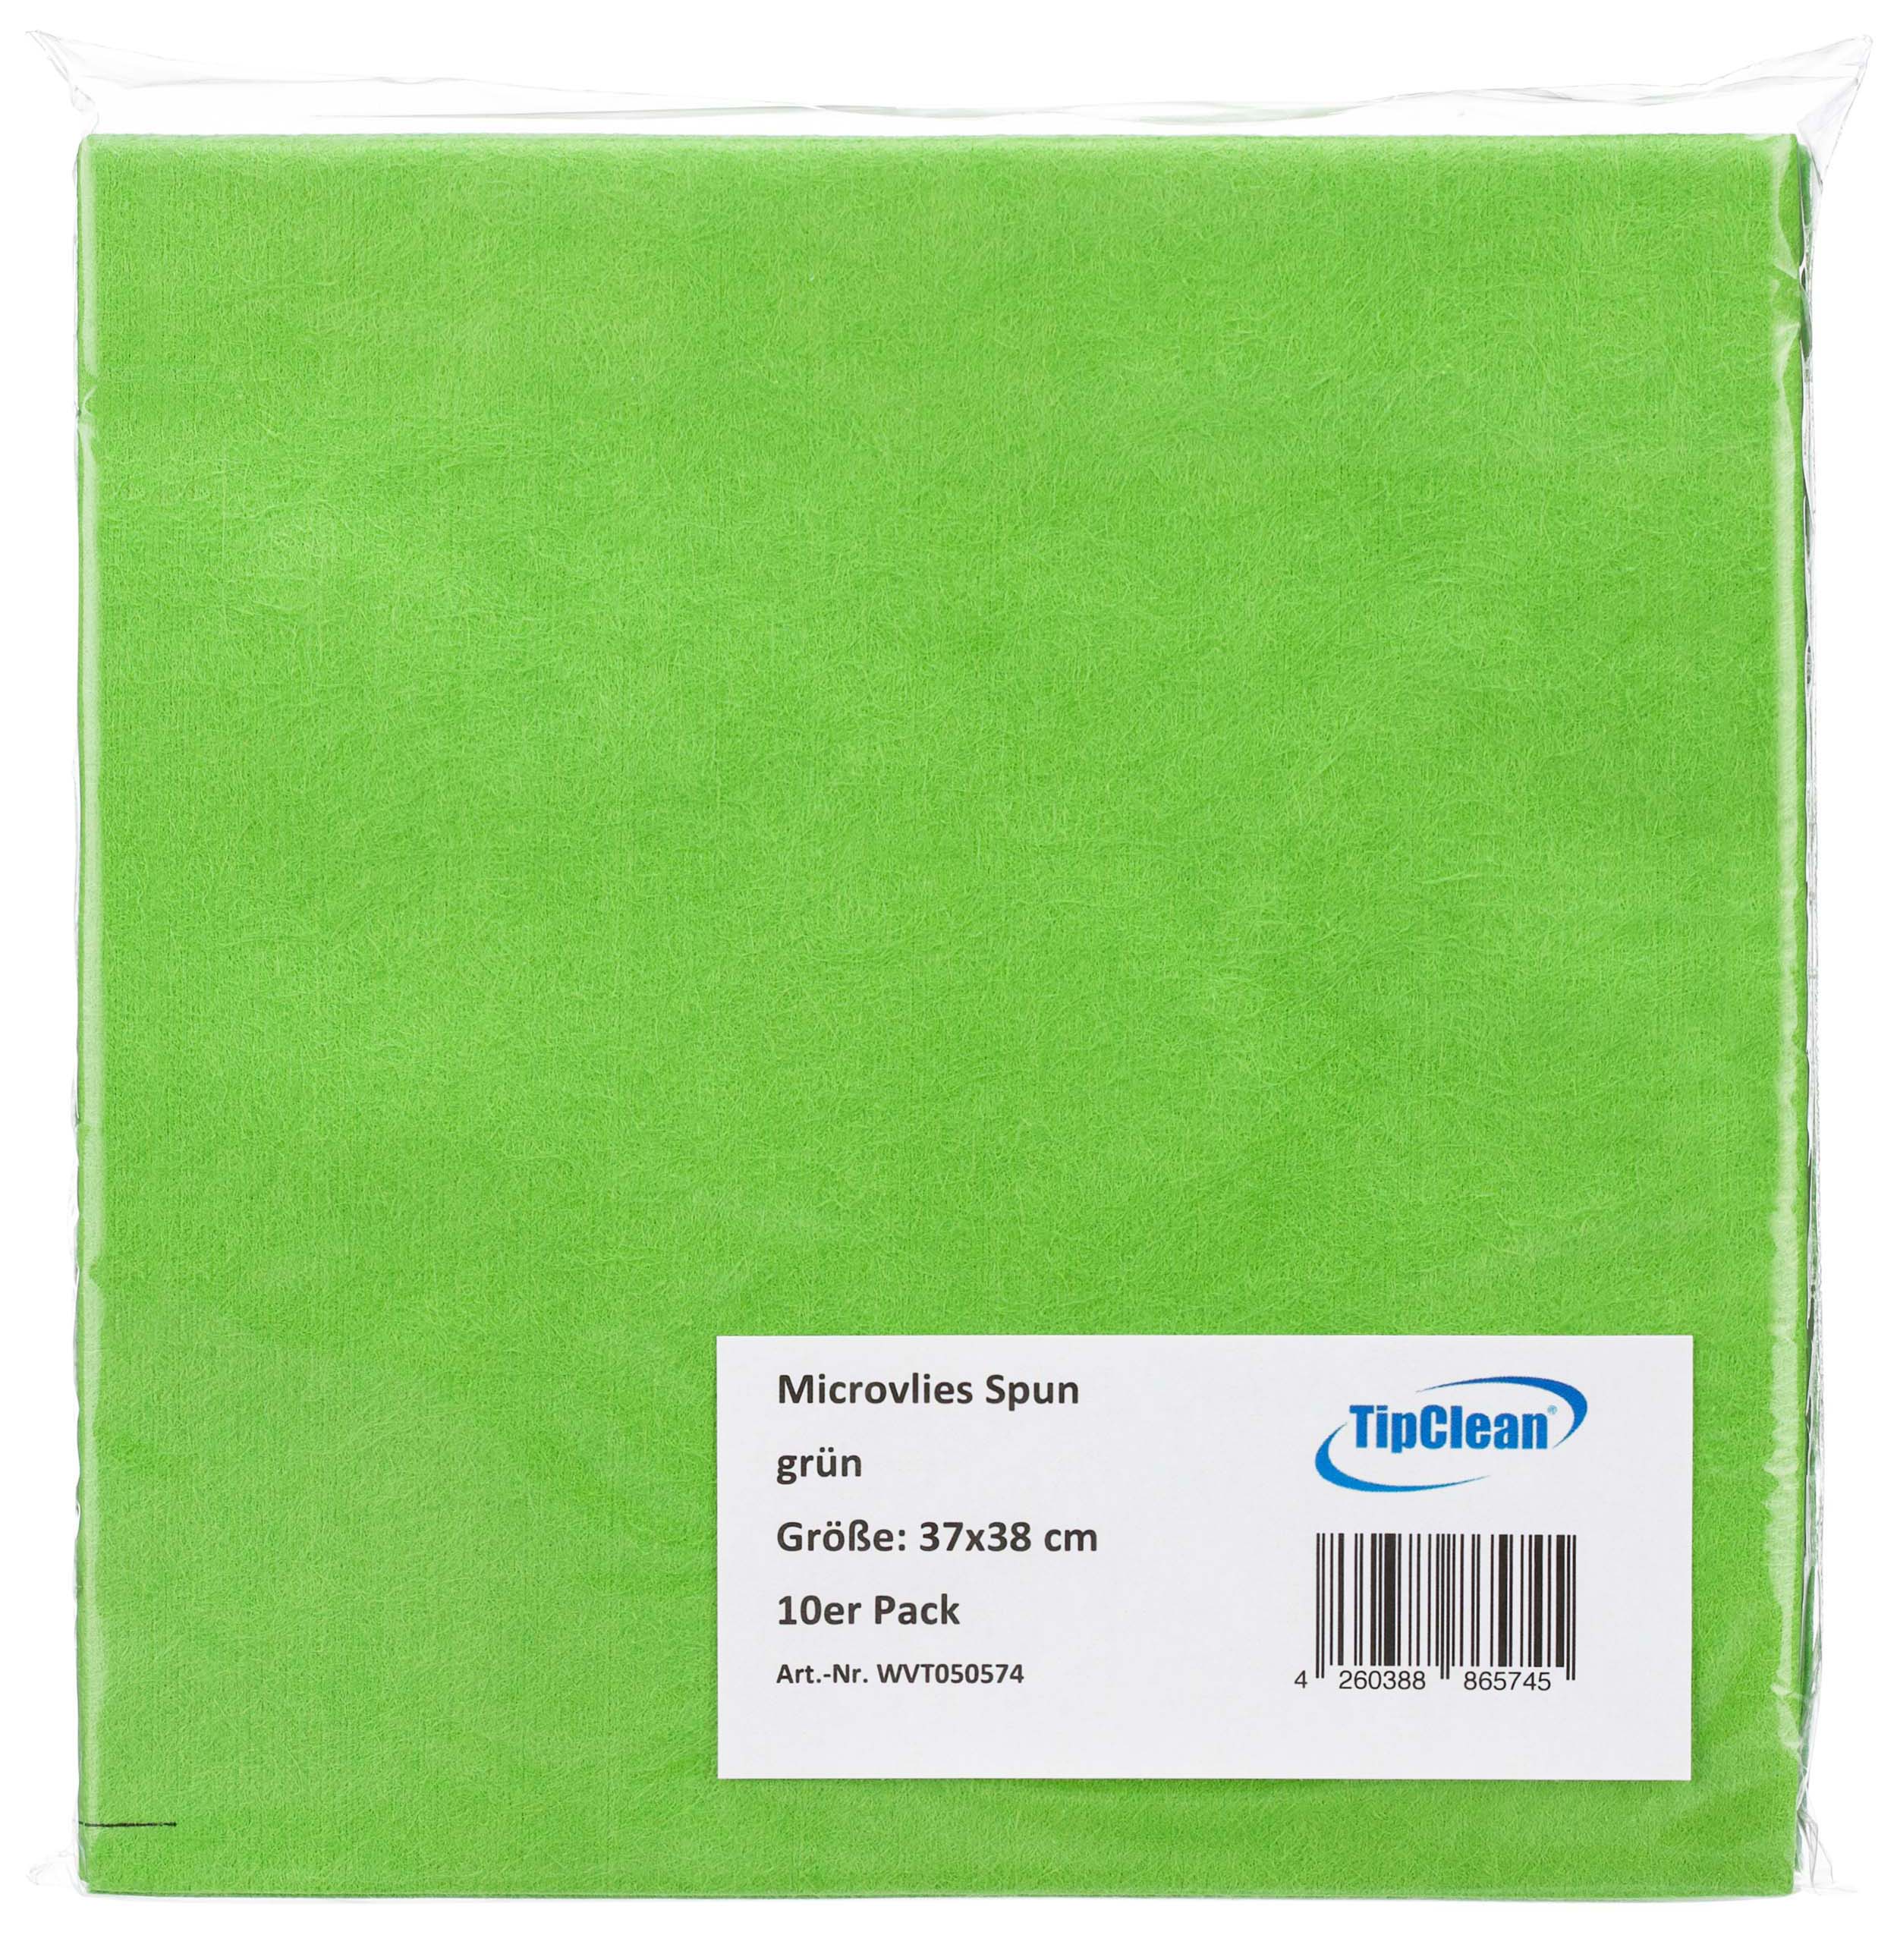 TipClean Microvlies Spun grün - 37 x 38 cm - 10er Pack